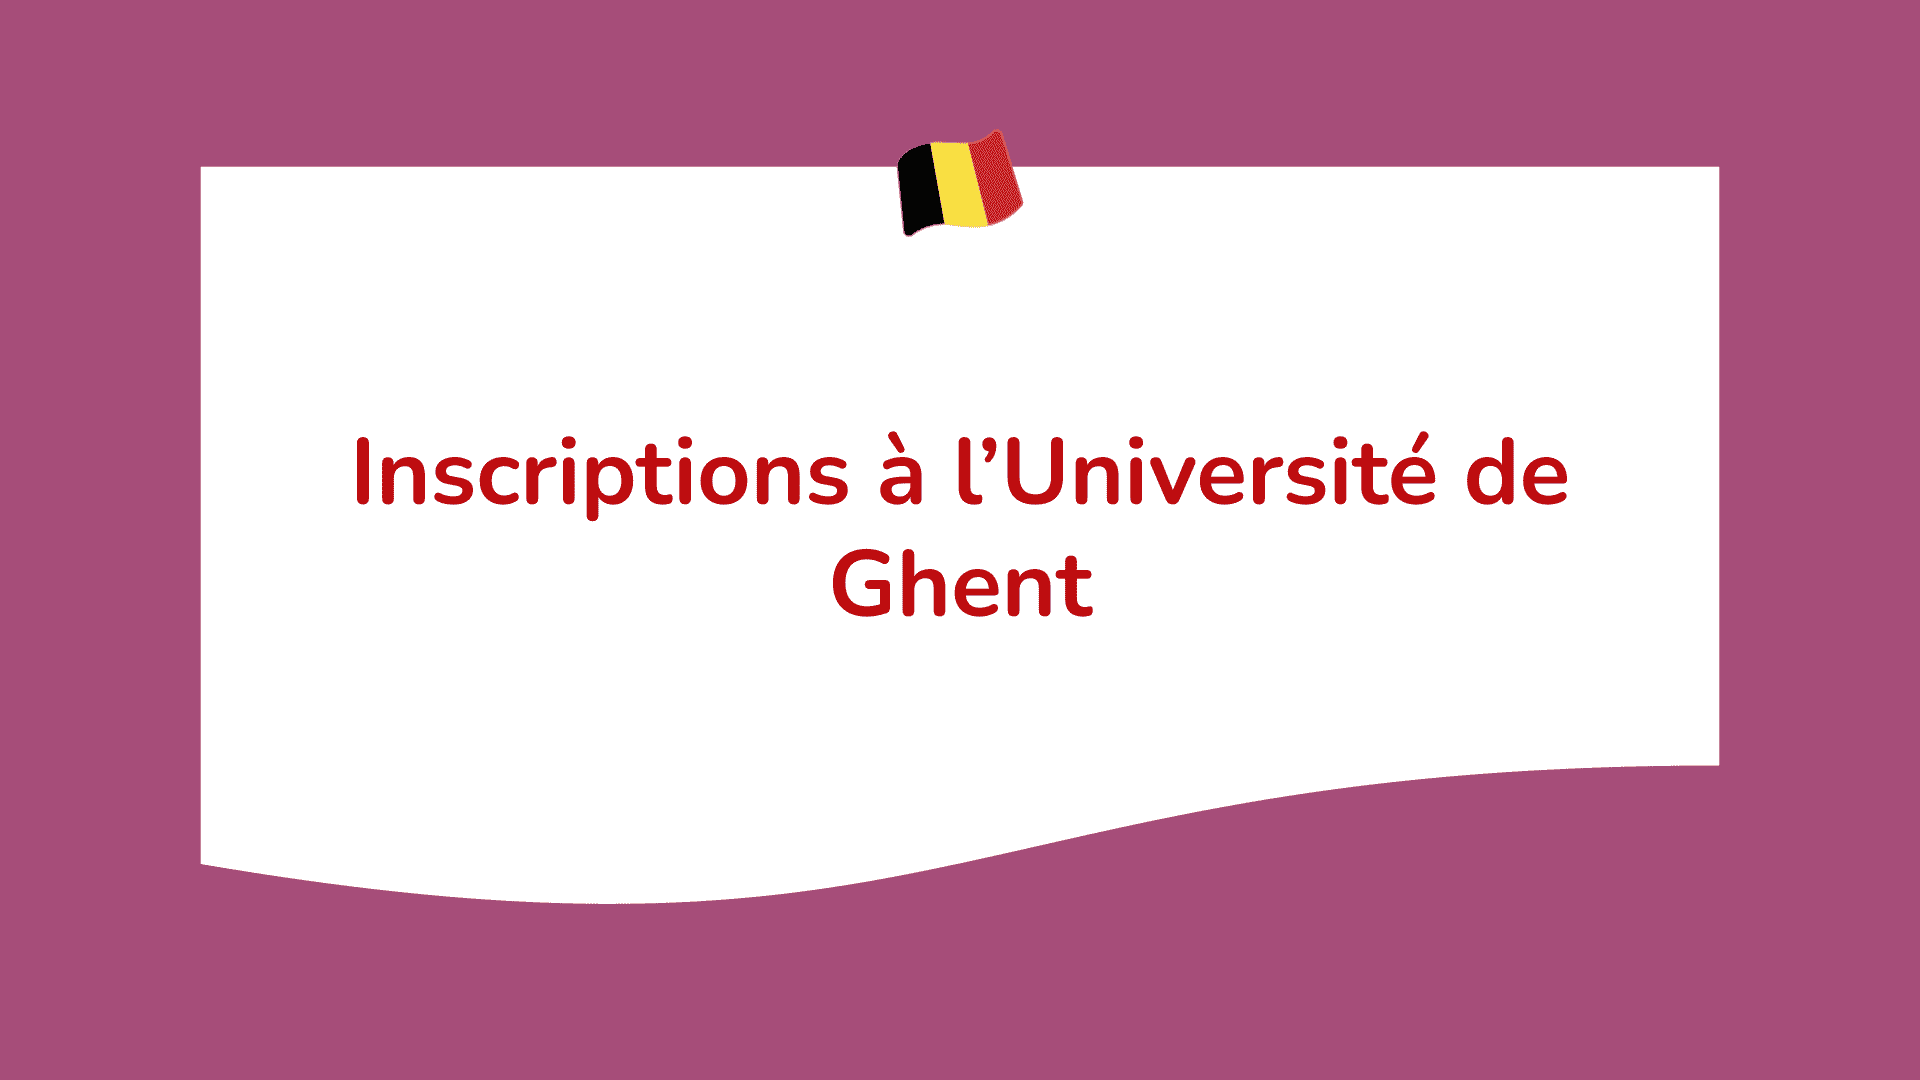 Inscriptions à l’Université de Ghent